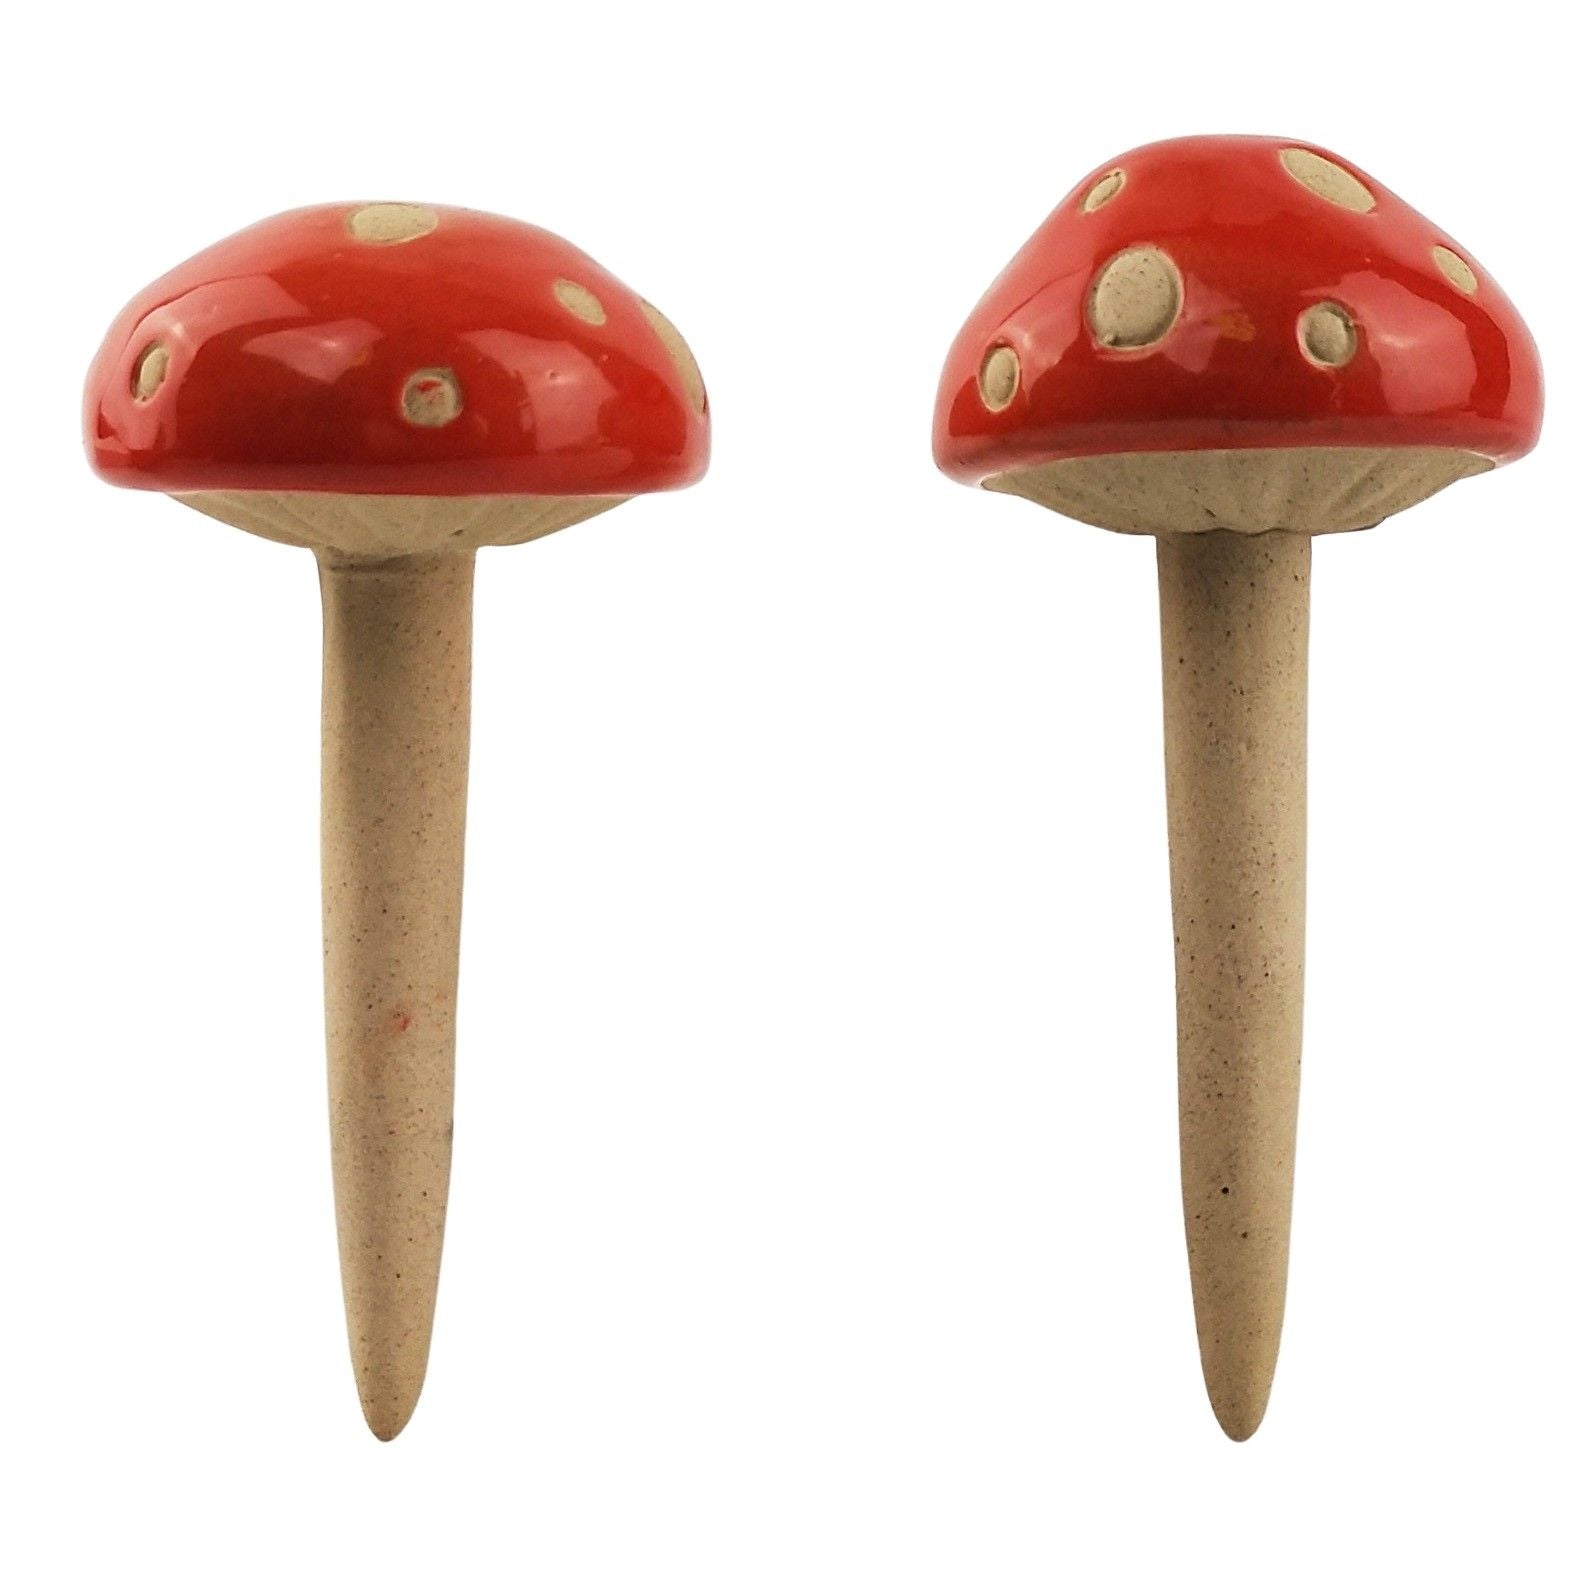 Mushroom Garden Ornaments